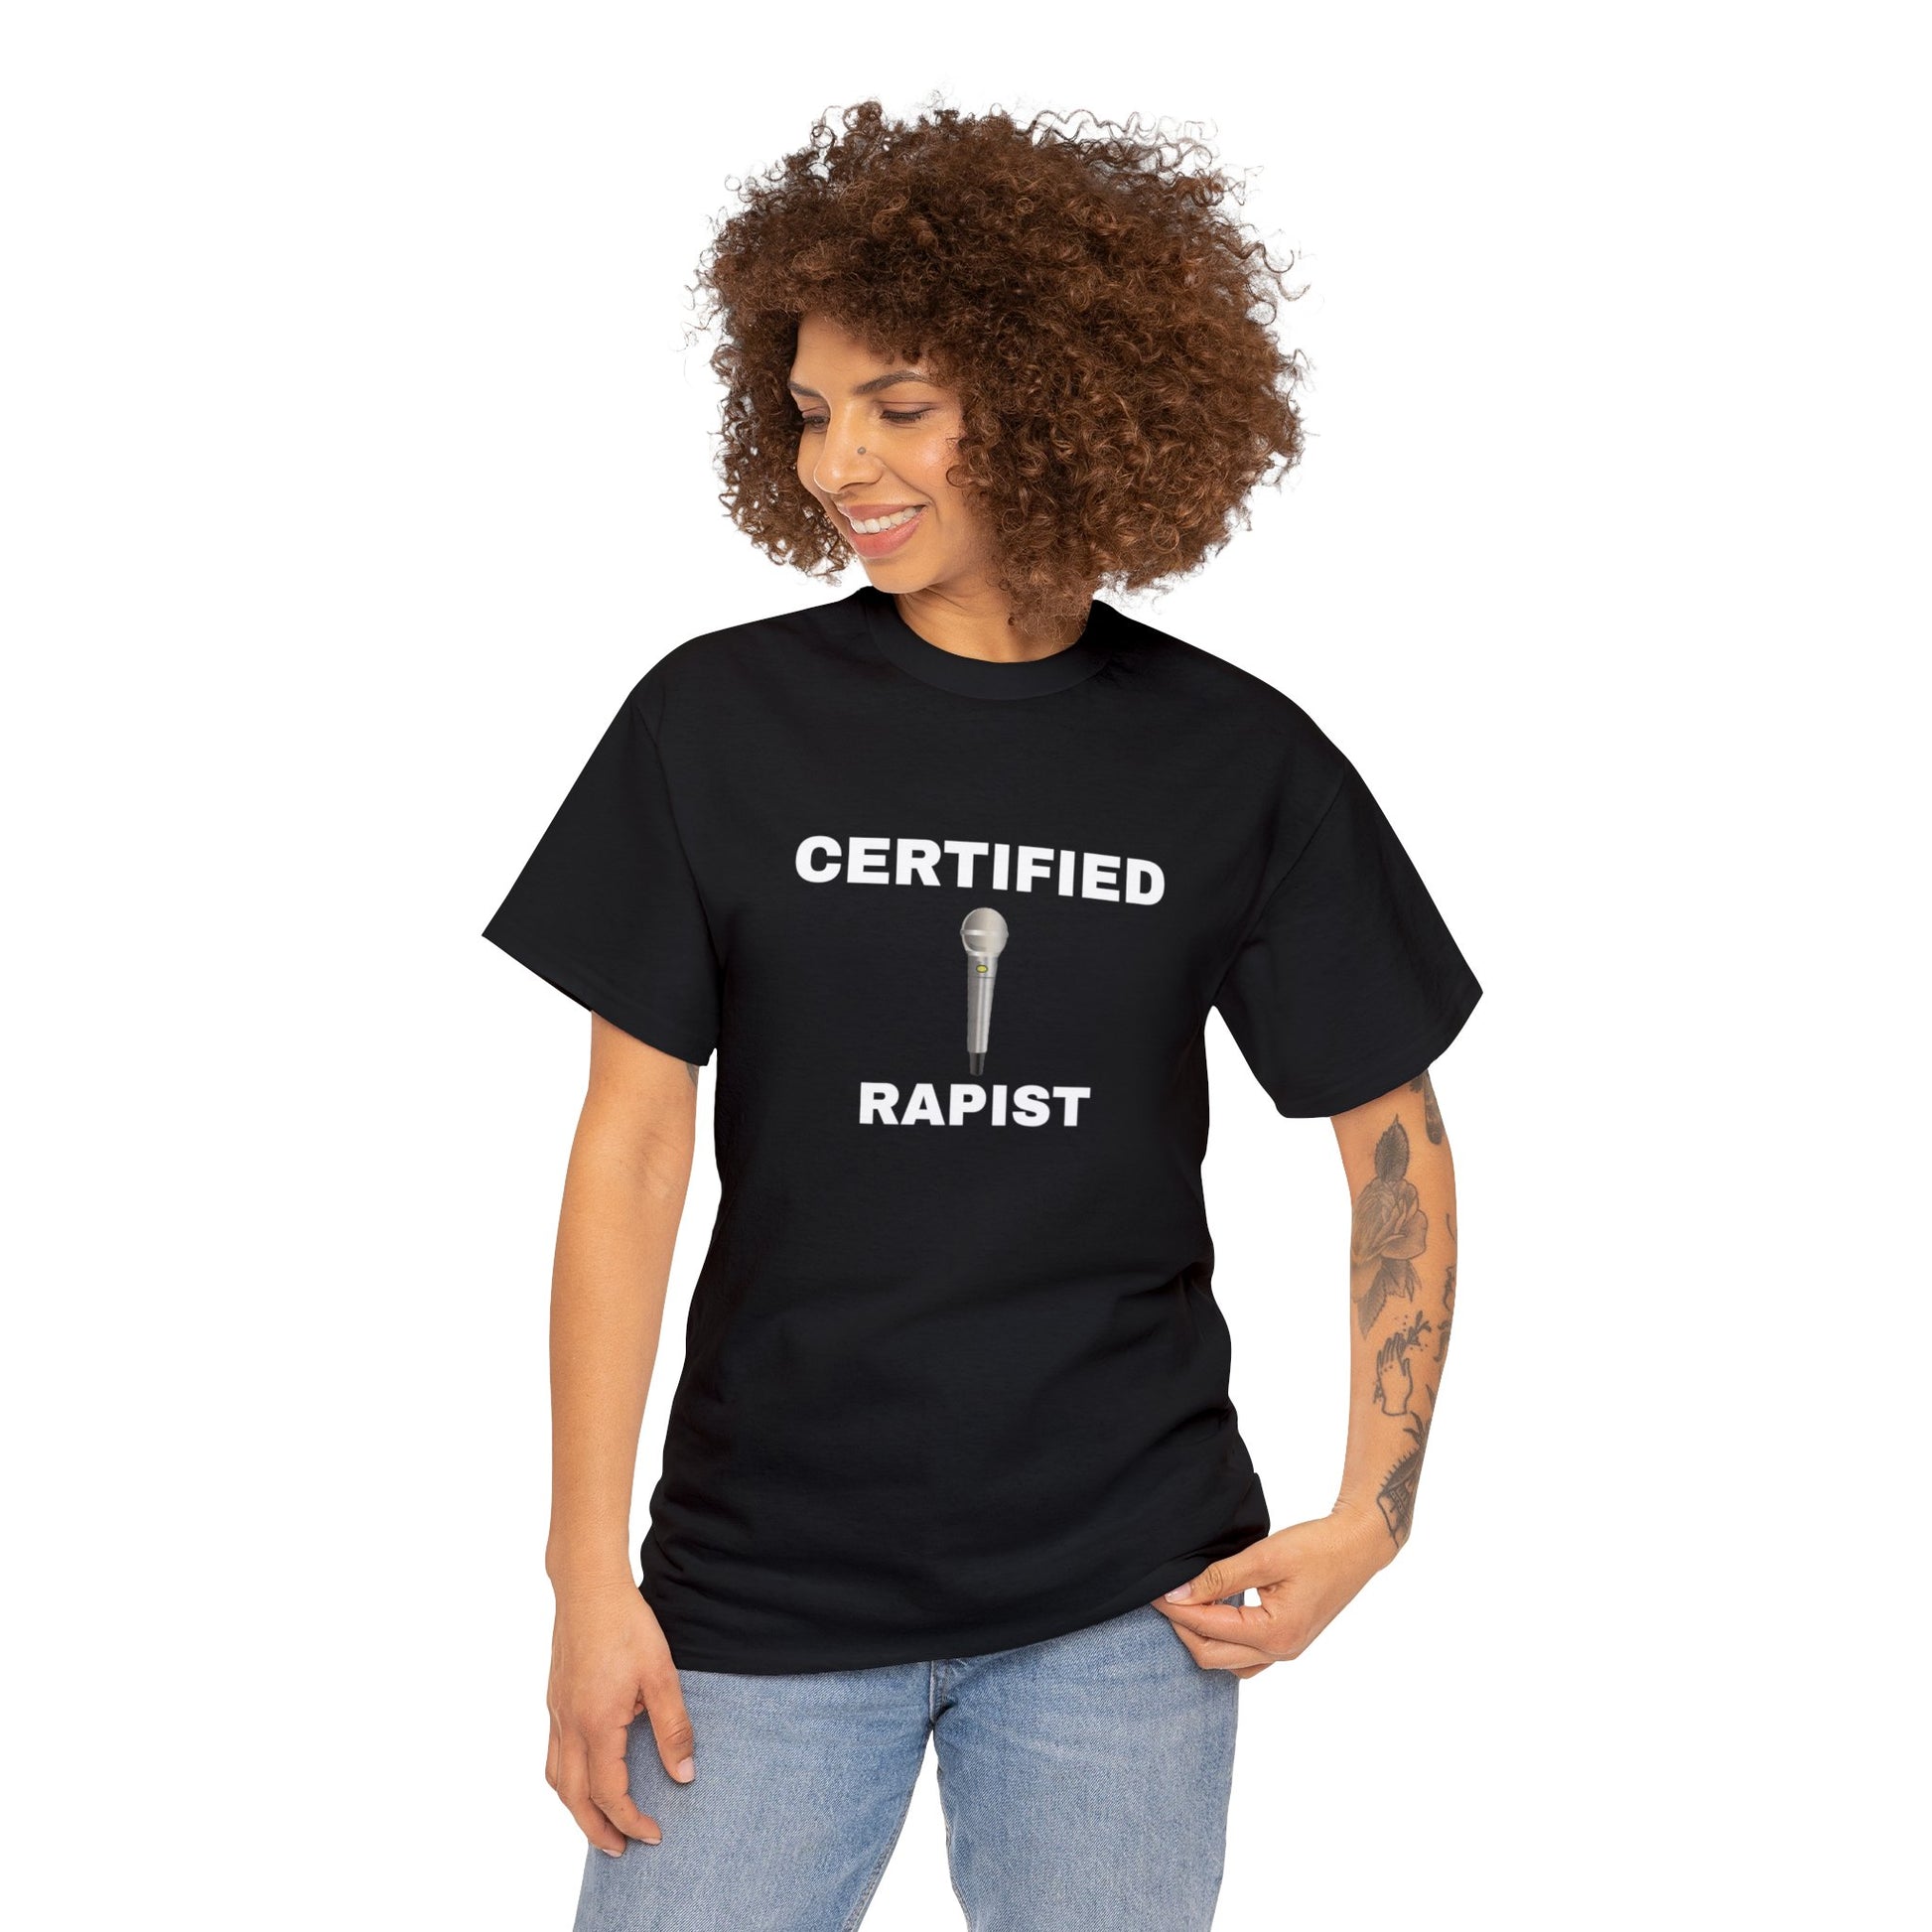 "Certified Rapist" Tee